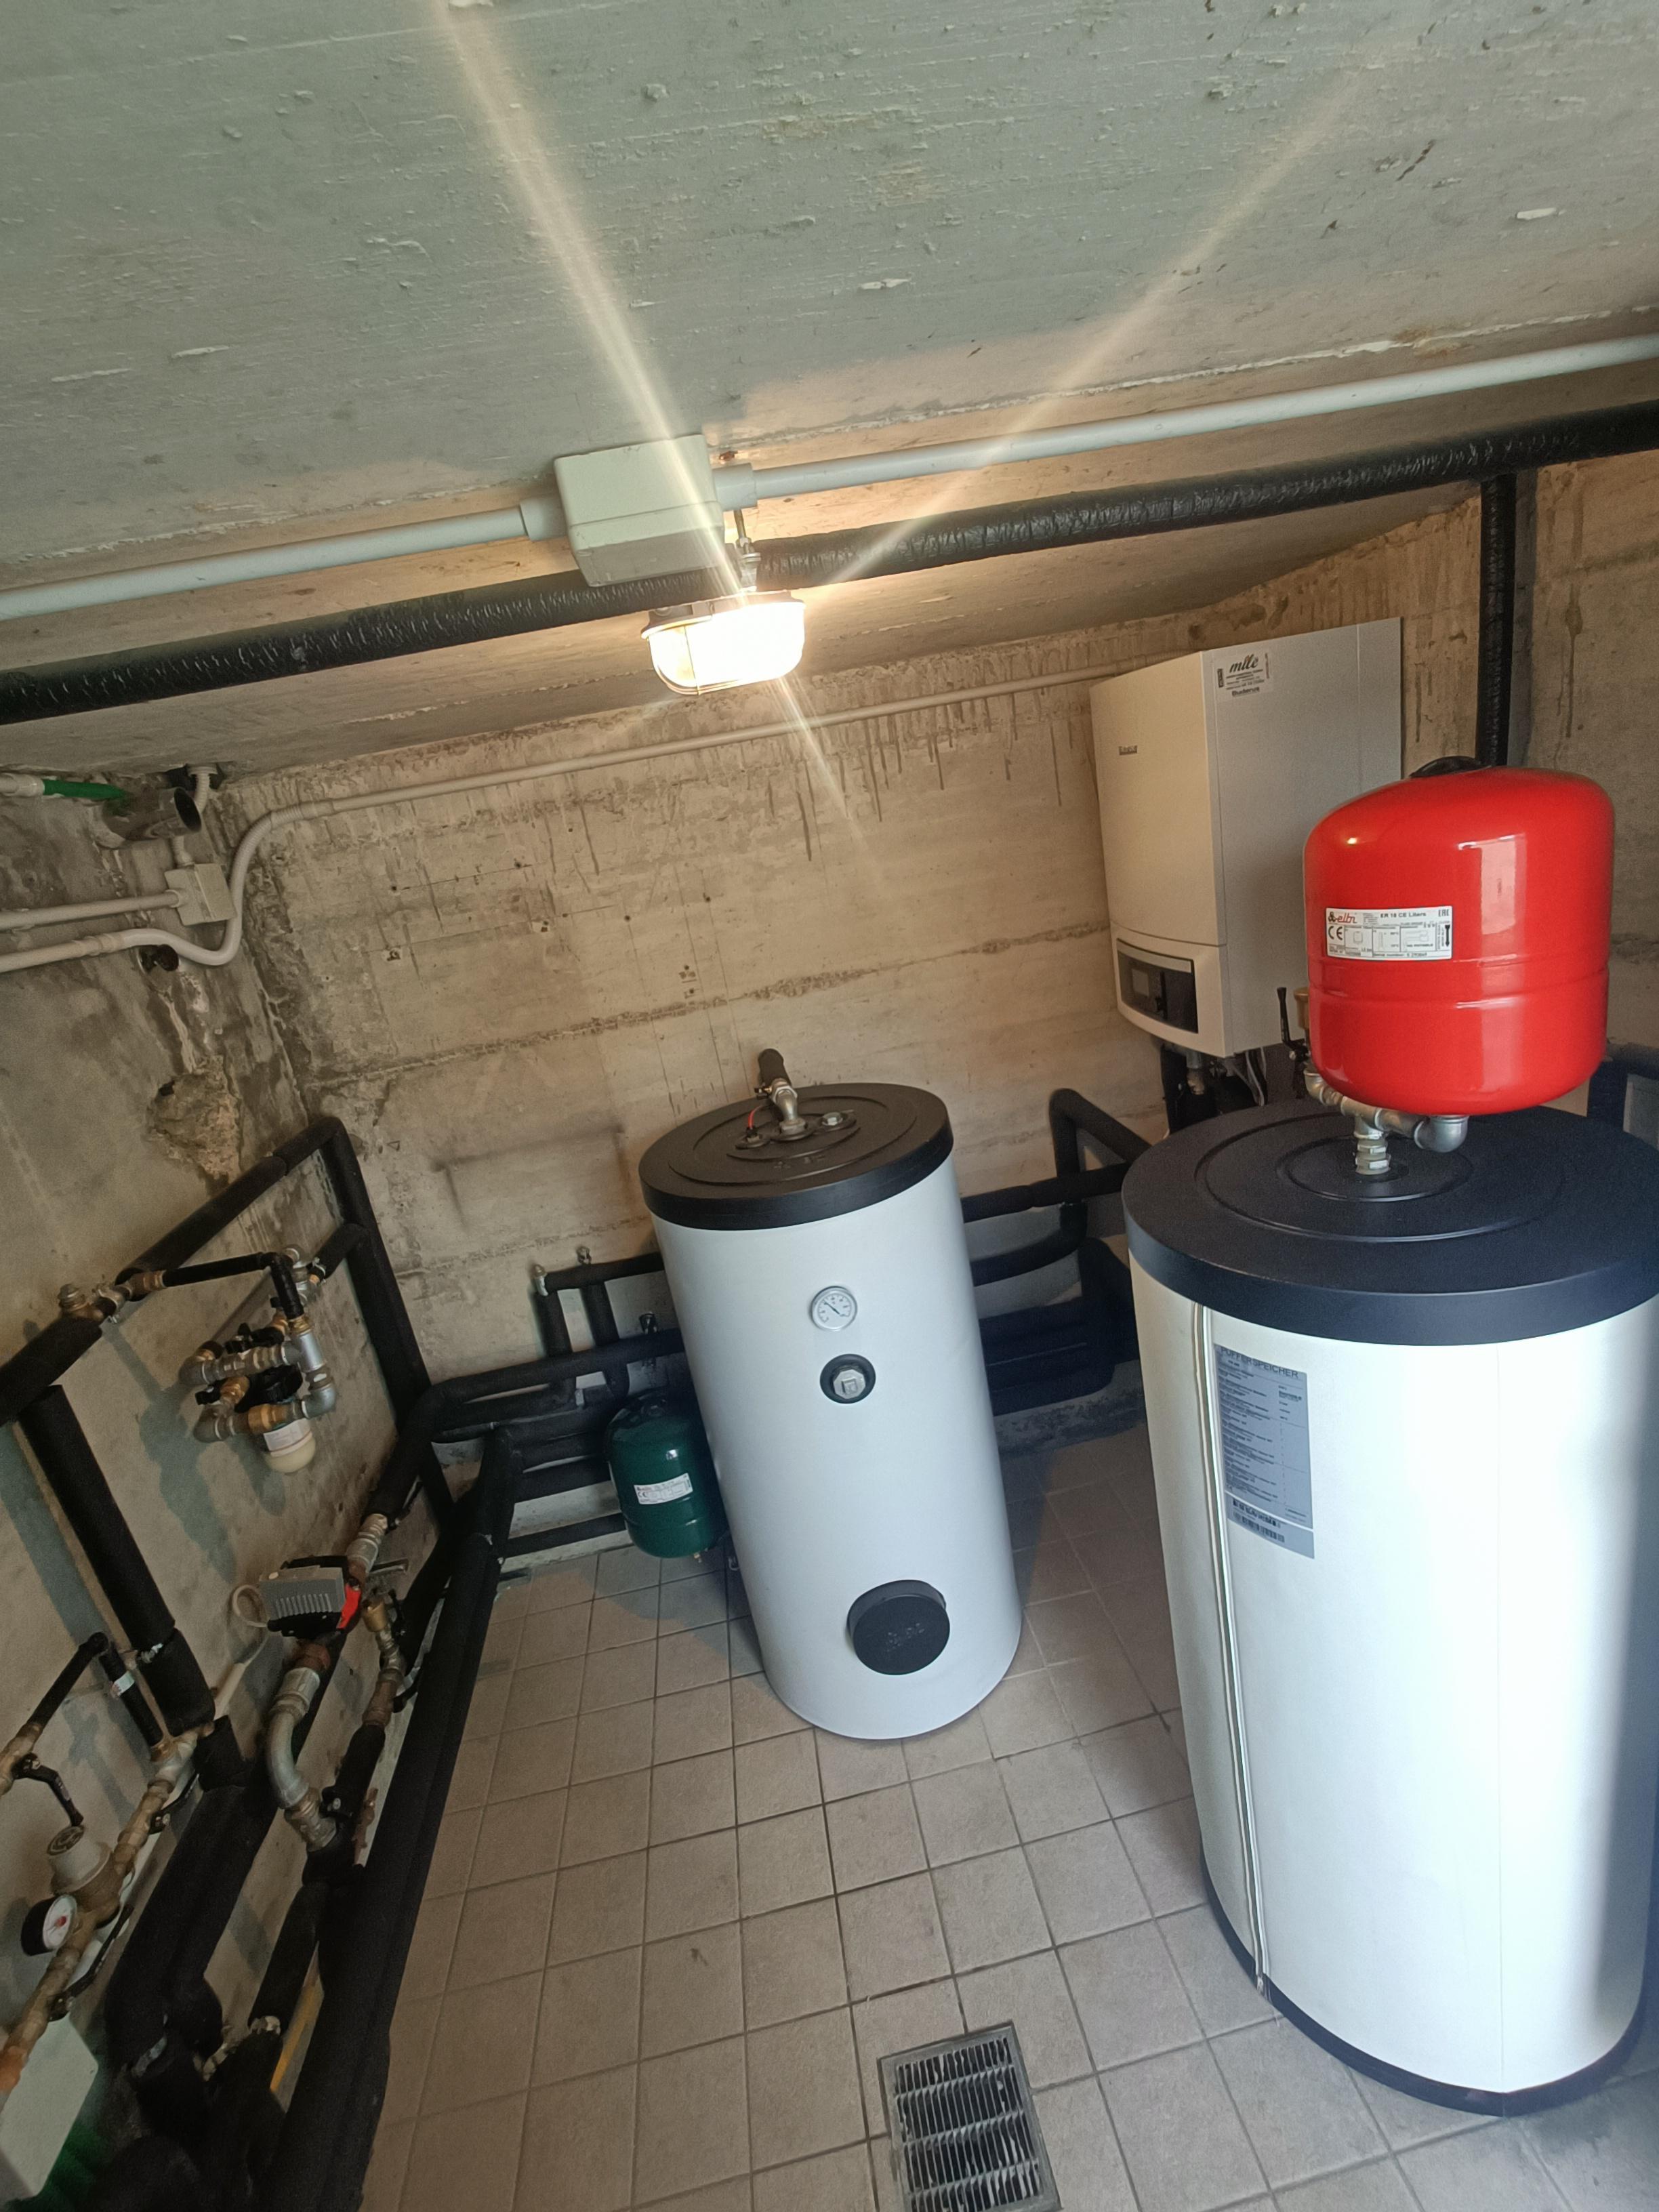 Pompa di calore Buderus (Villa di Serio) realizzato da HF Impianti,  a Monza